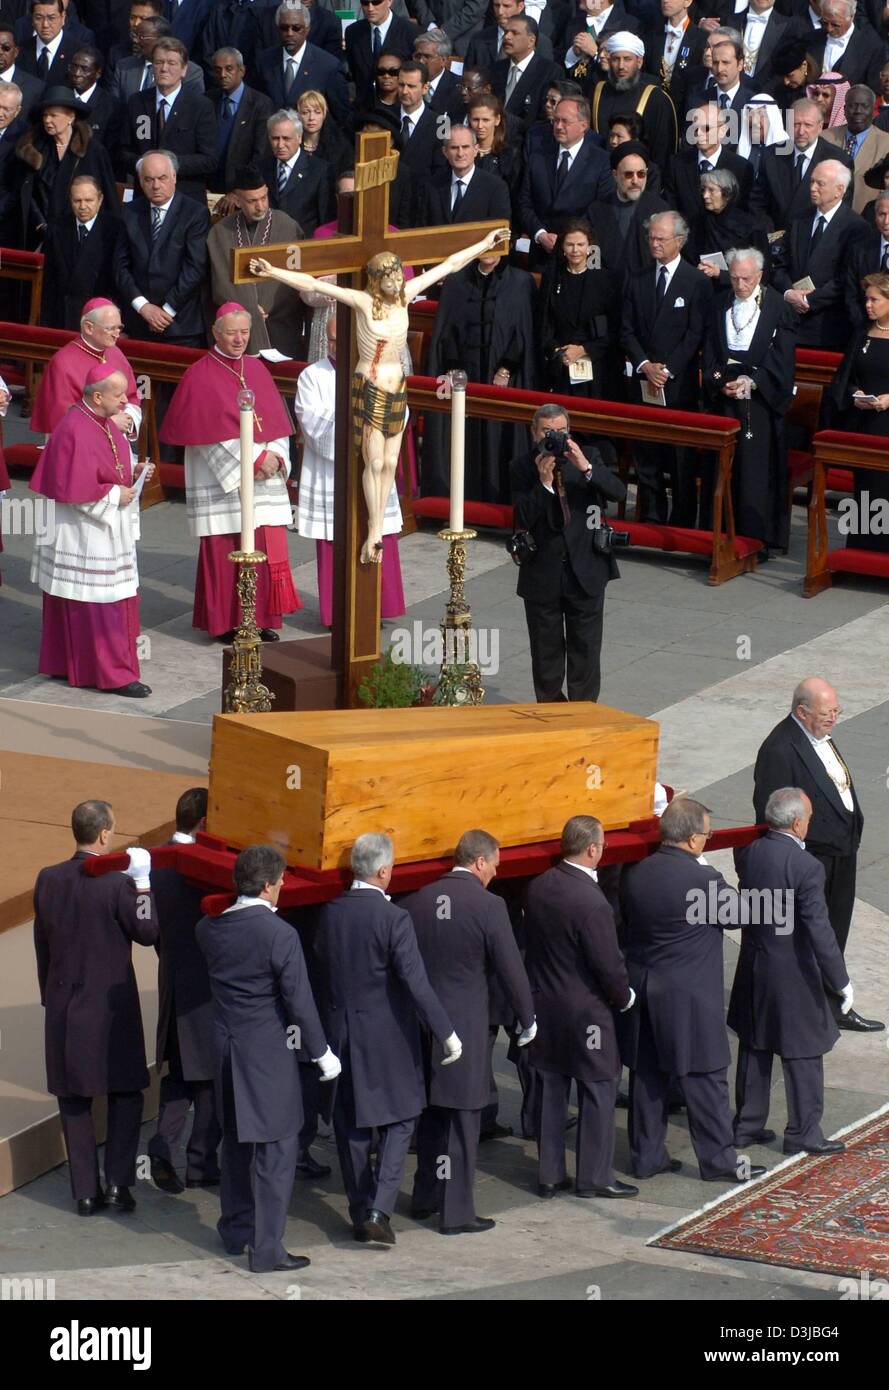 Afp) - Le cercueil avec le corps du pape Jean Paul II est présenté pour le  service funèbre par les porteurs à la place Saint Pierre au Vatican, État  de la Cité